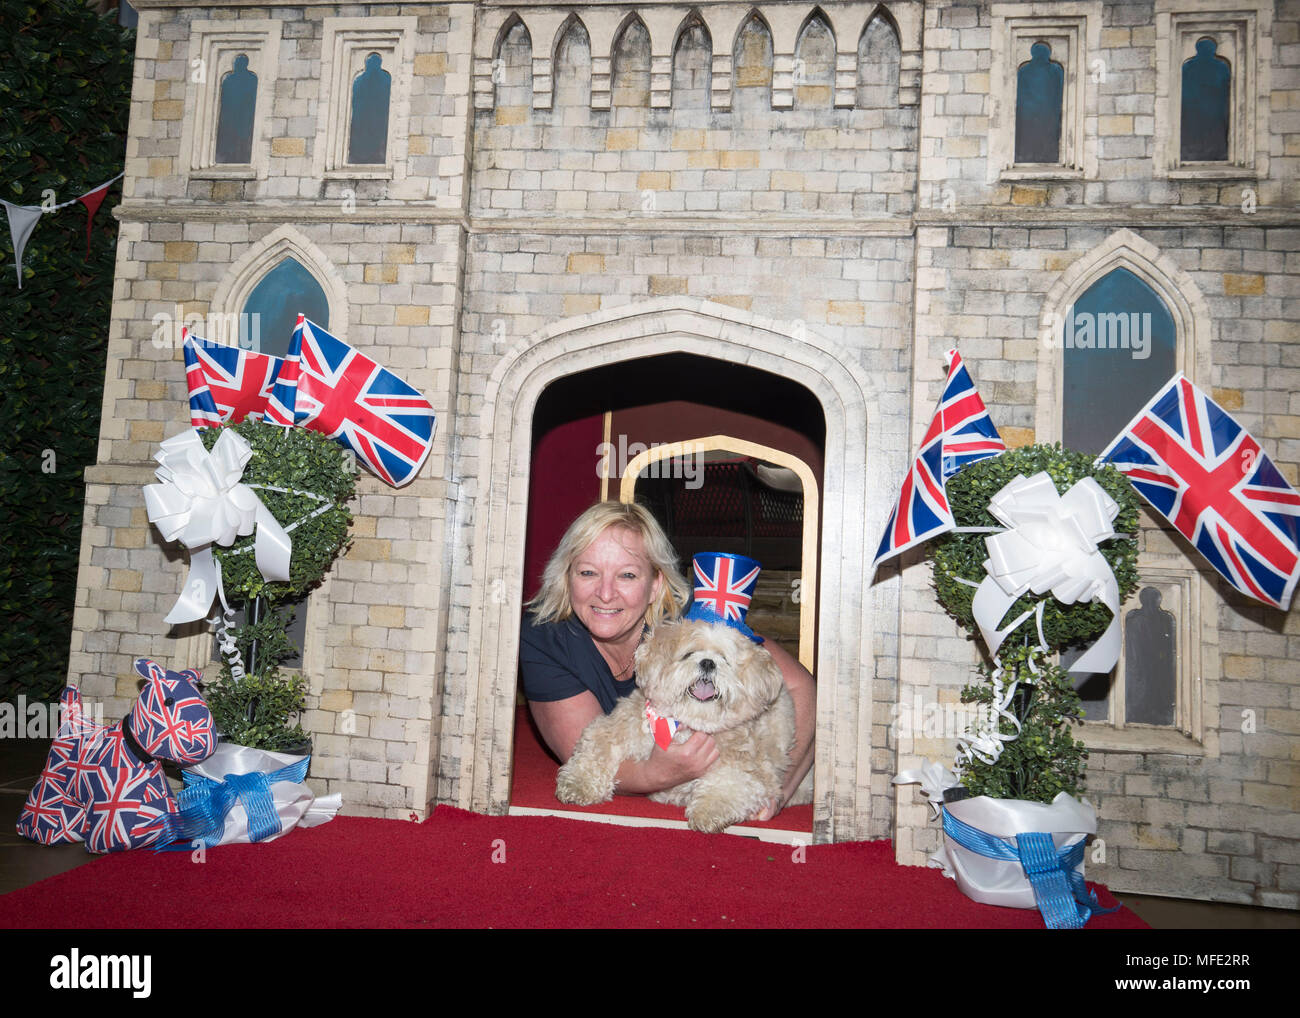 Gagnant de loterie Susan Crossland avec son chien Archie le Lhasa Apso et son nouveau chenil, une réplique du château de Windsor, où elle a installé à son domicile à Mirfield, West Yorkshire. Banque D'Images